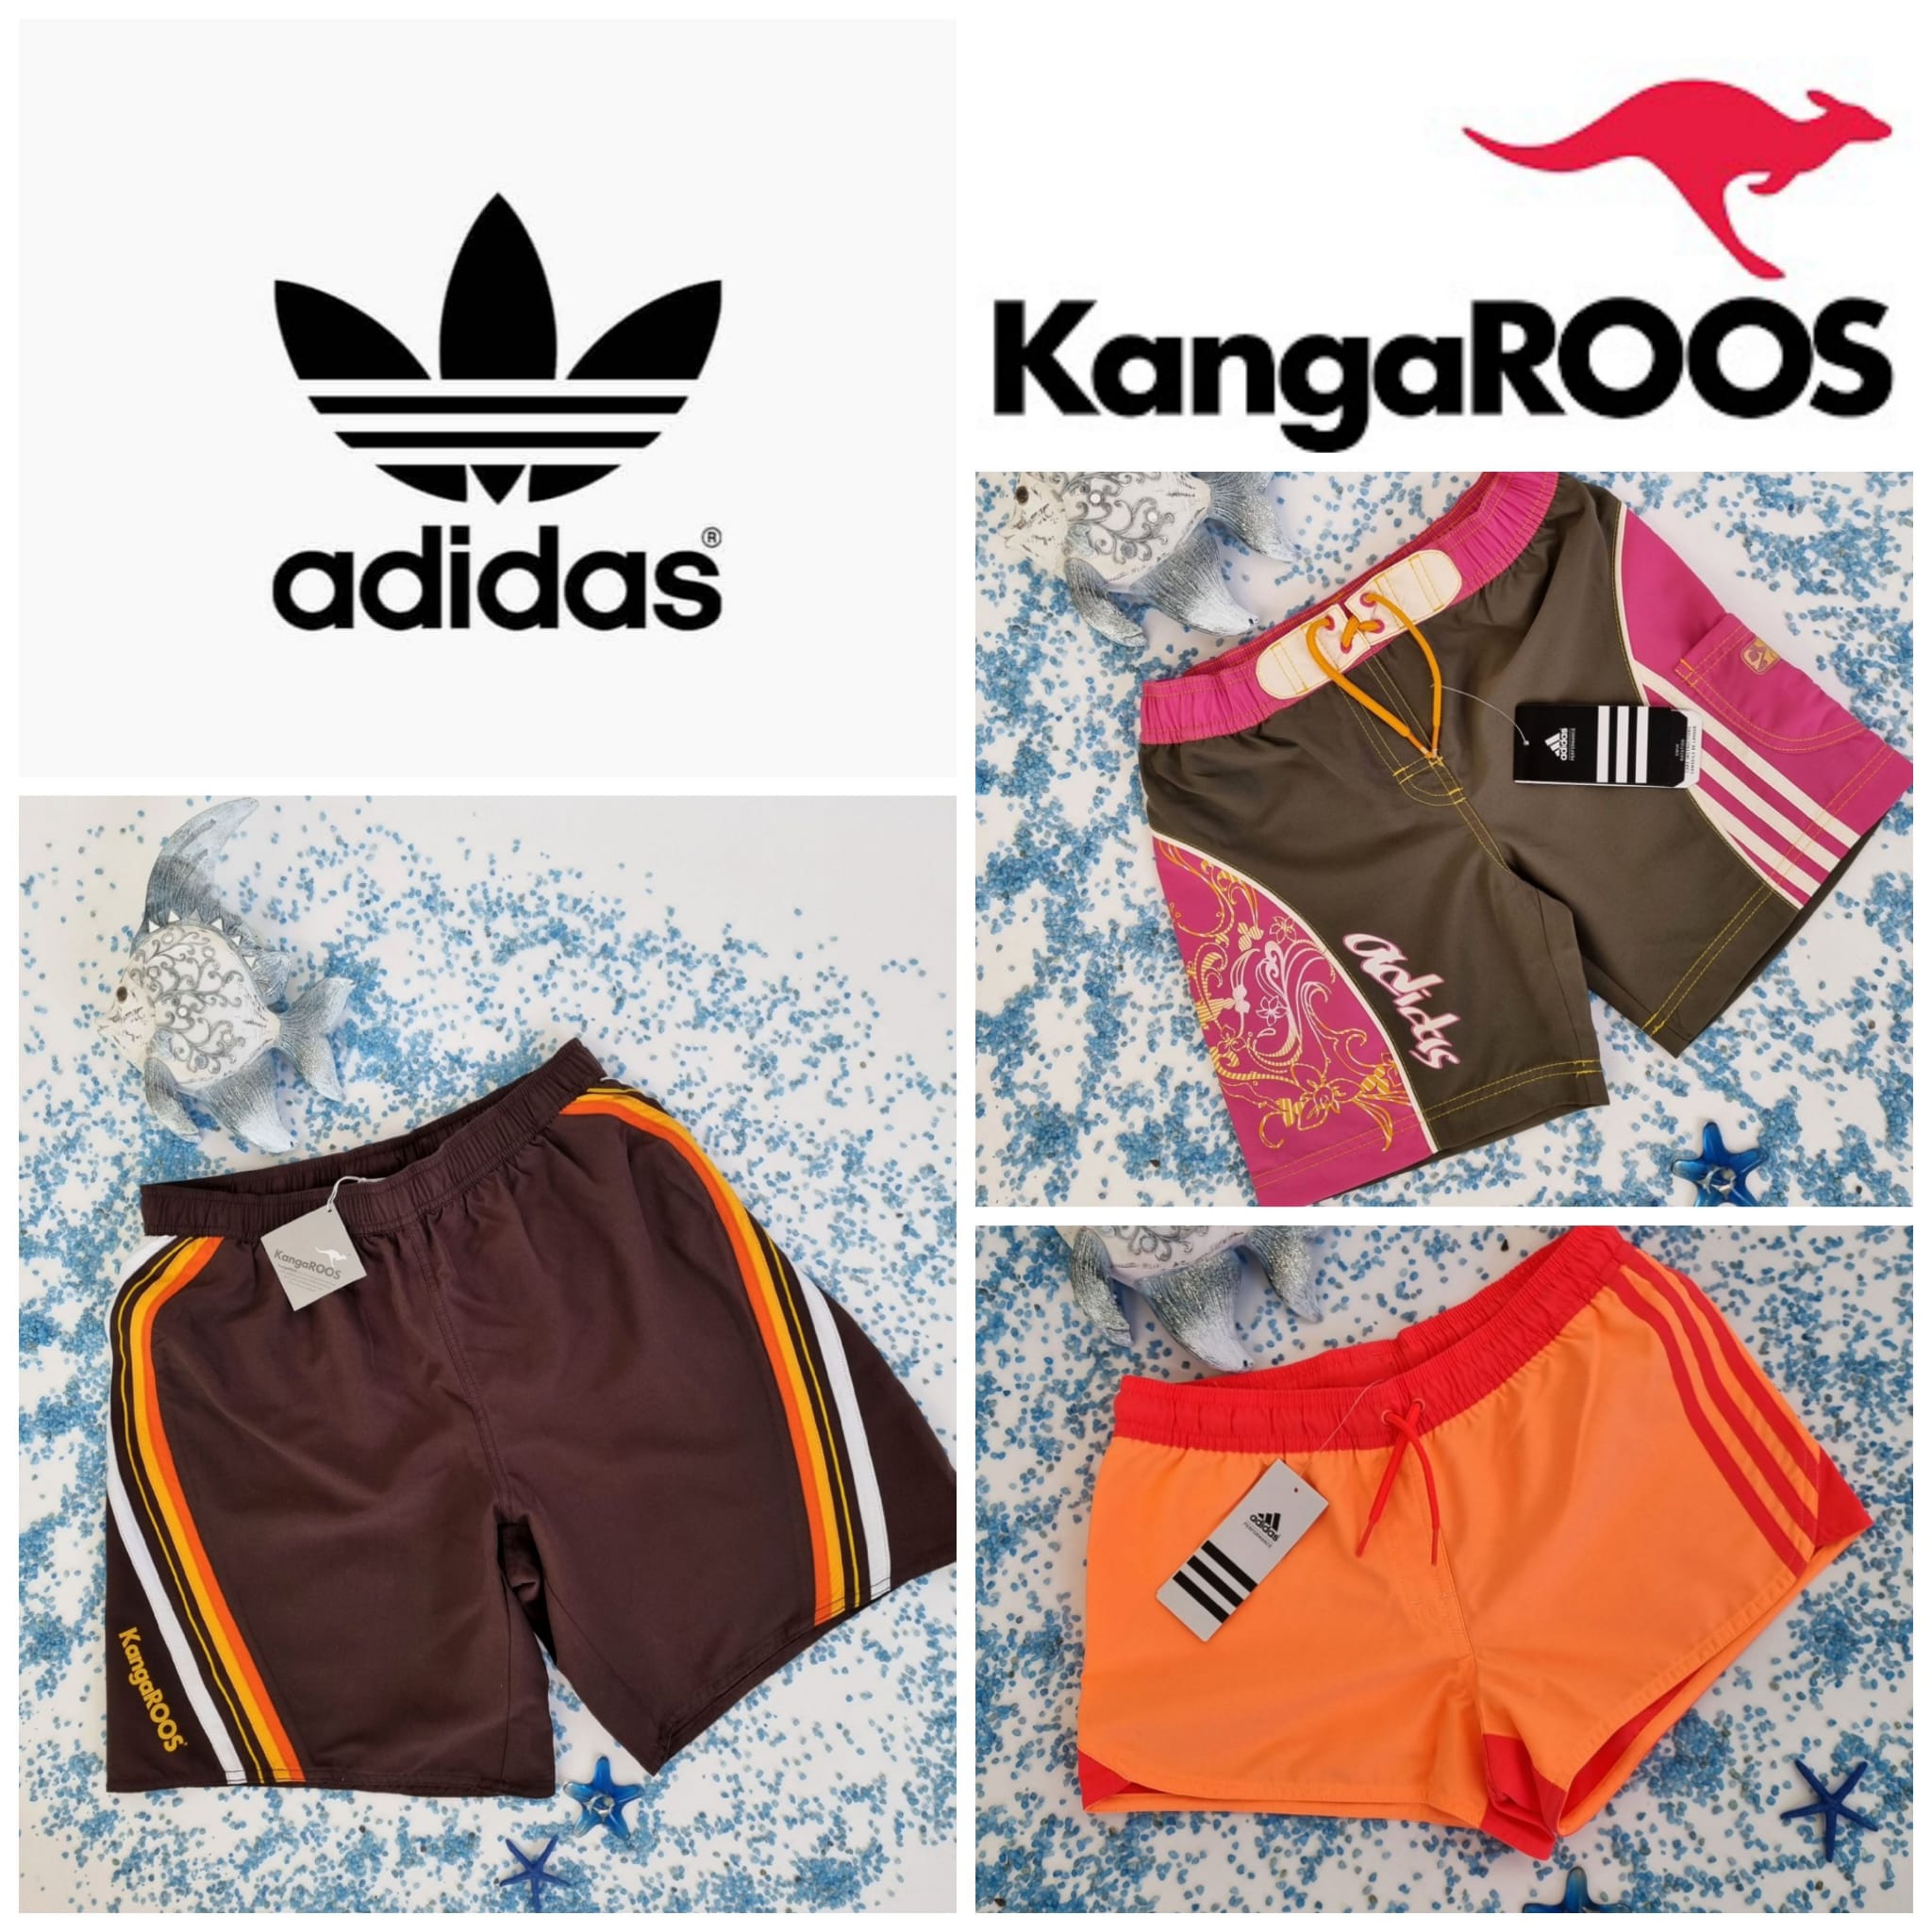 Adidas, KangaRoos